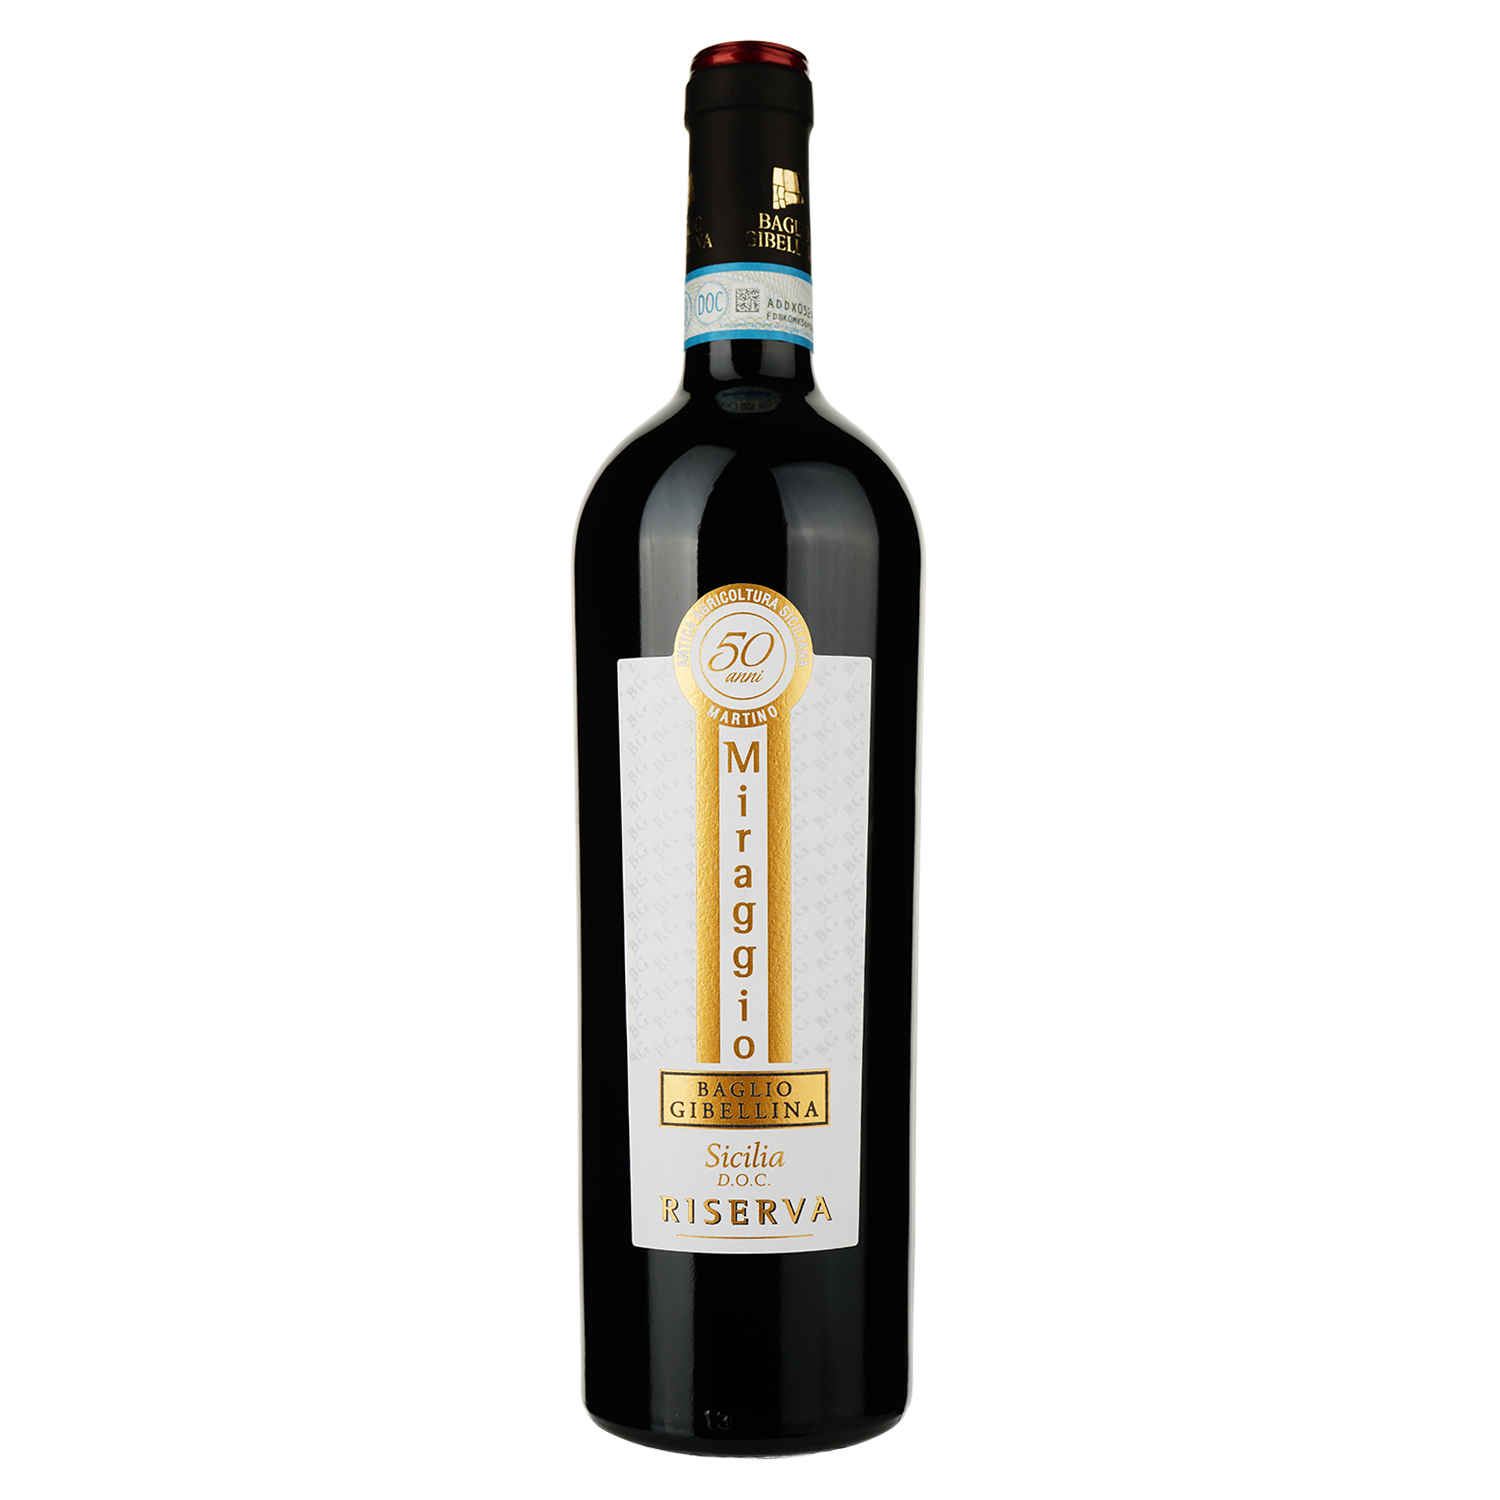 Вино Baglio Gibellina Miraggio Rosso Sicilia DOC Riserva, красное, сухое, 14%, 0,75 л - фото 1